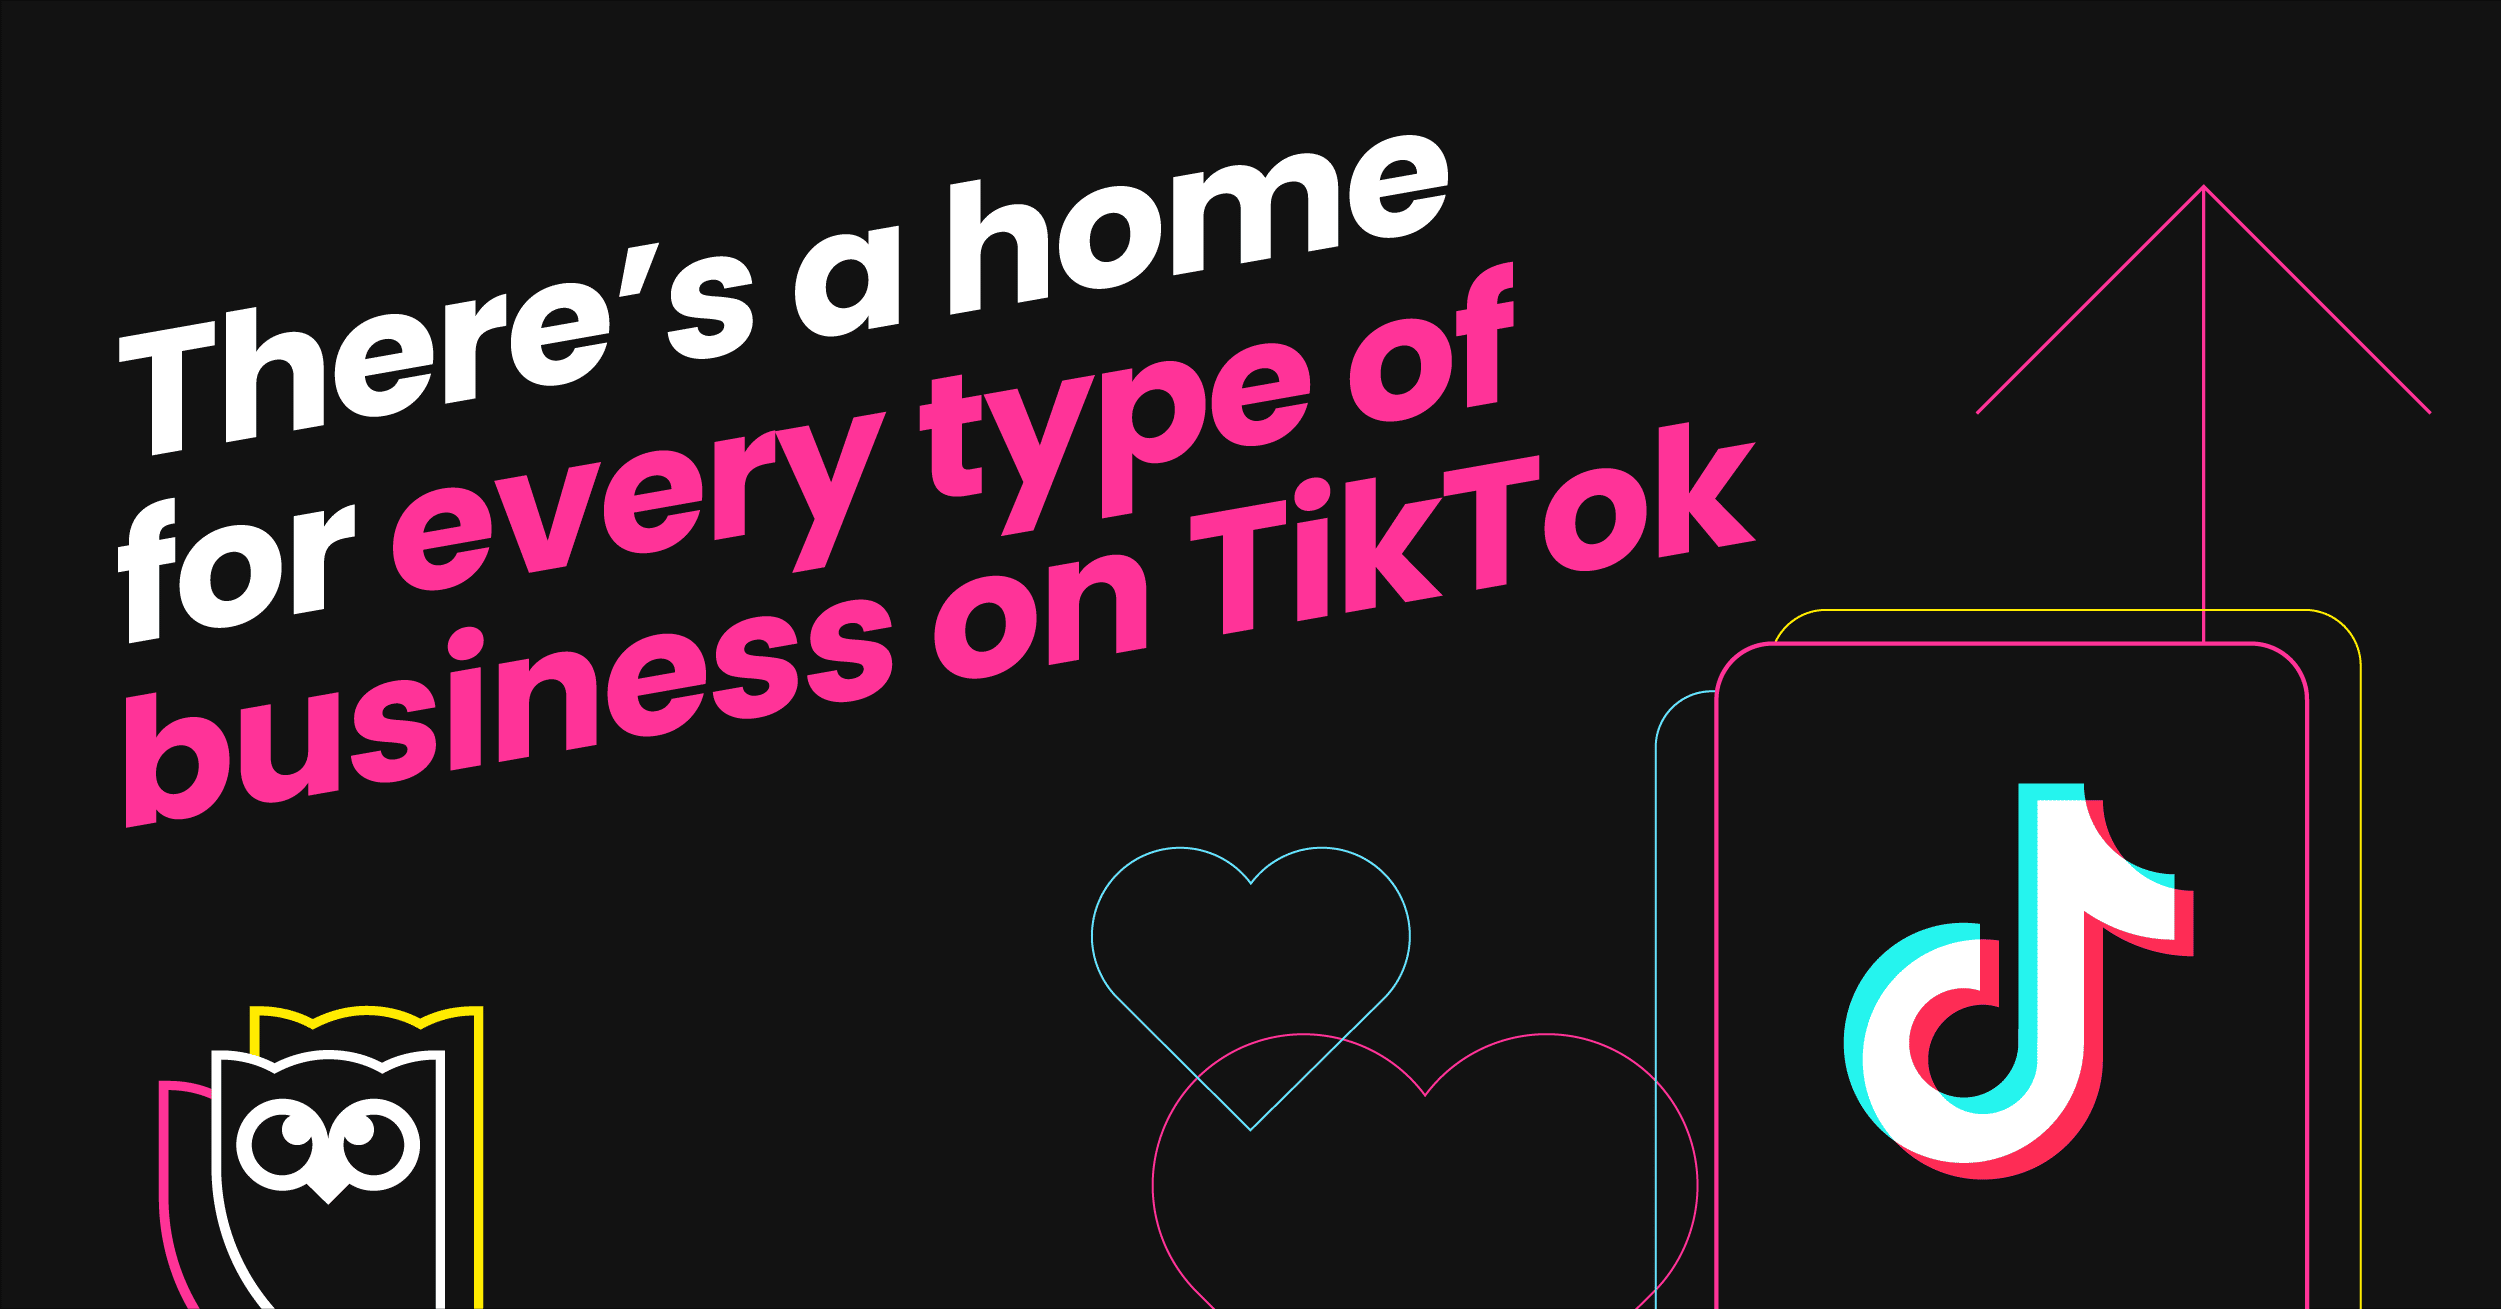 graphique de texte blanc et rose vif sur fond noir lisant "Il y a une maison pour chaque type d'entreprise sur TikTok"